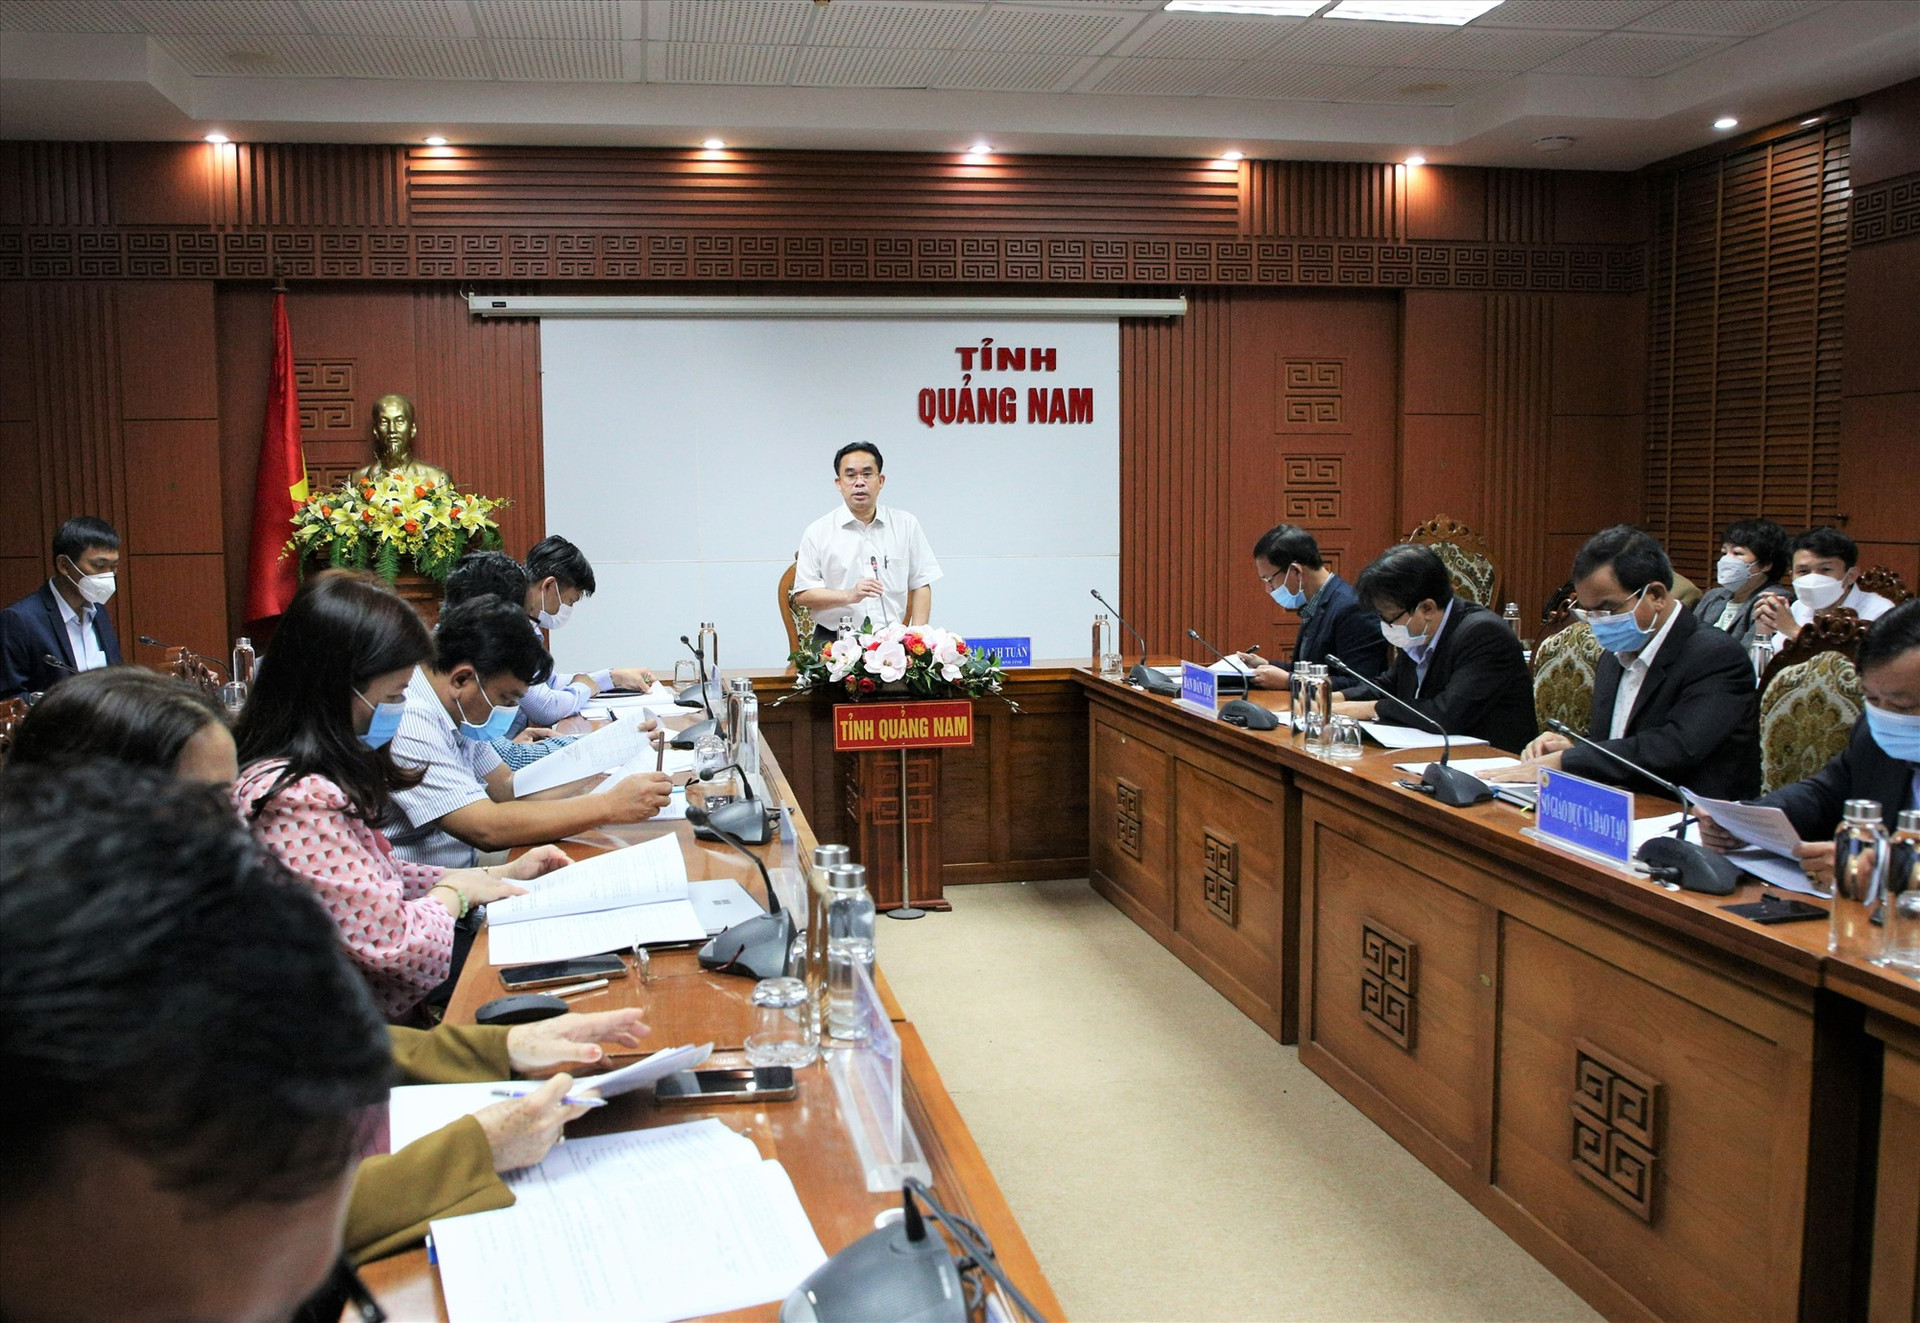 Phó Chủ tịch UBND tỉnh Trần Anh Tuấn phát biểu tại buổi làm việc. Ảnh: A.N